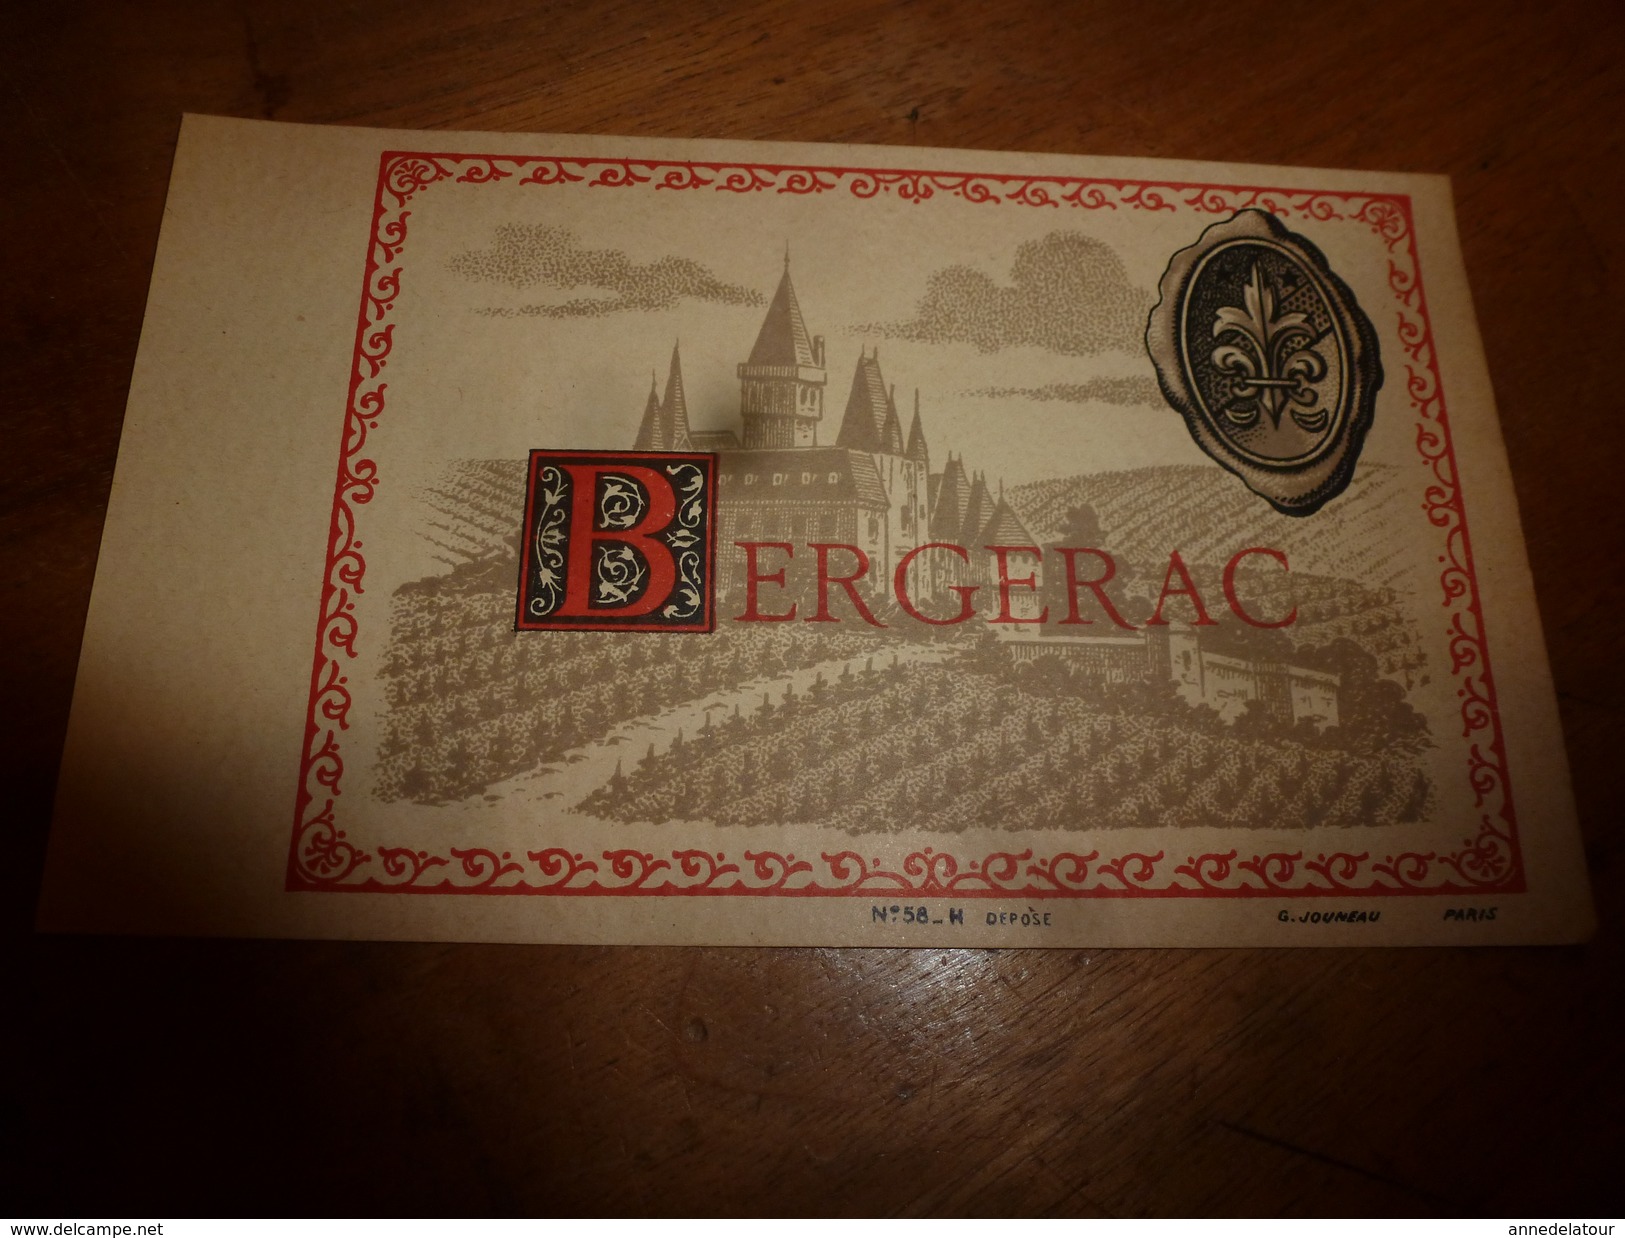 1920 ? Spécimen étiquette De Vin De BERGERAC N° 58  ,déposé, Imp. G.Jouneau  3 Rue Papin à Paris (illustr Château) - Bergerac